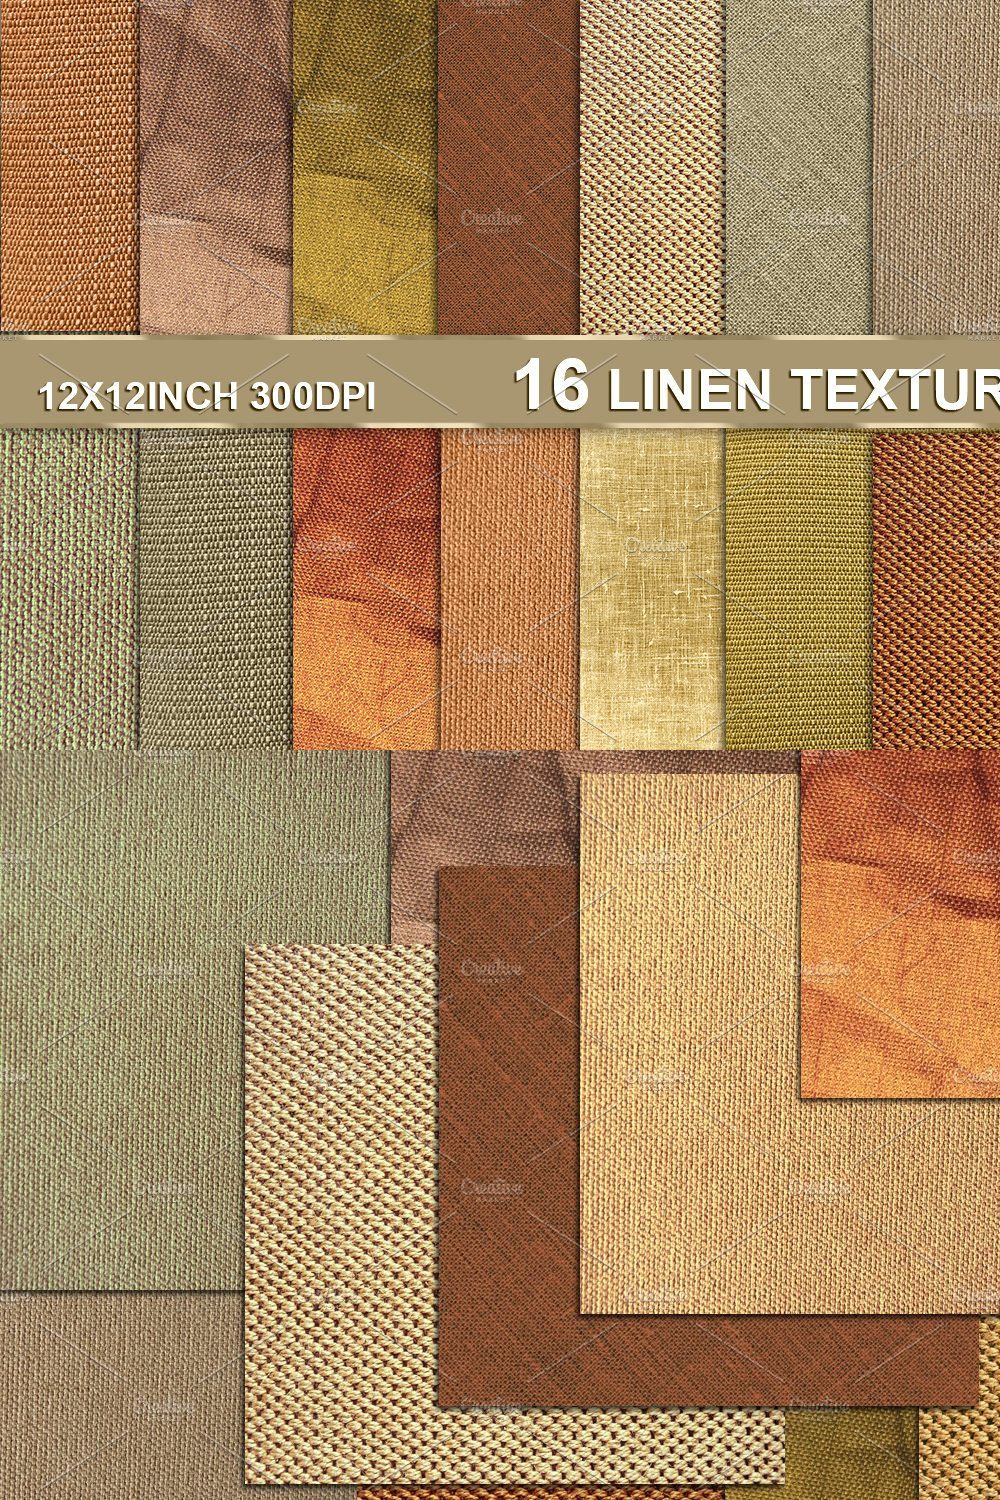 Linen Canvas Textile Burlap Texture pinterest preview image.